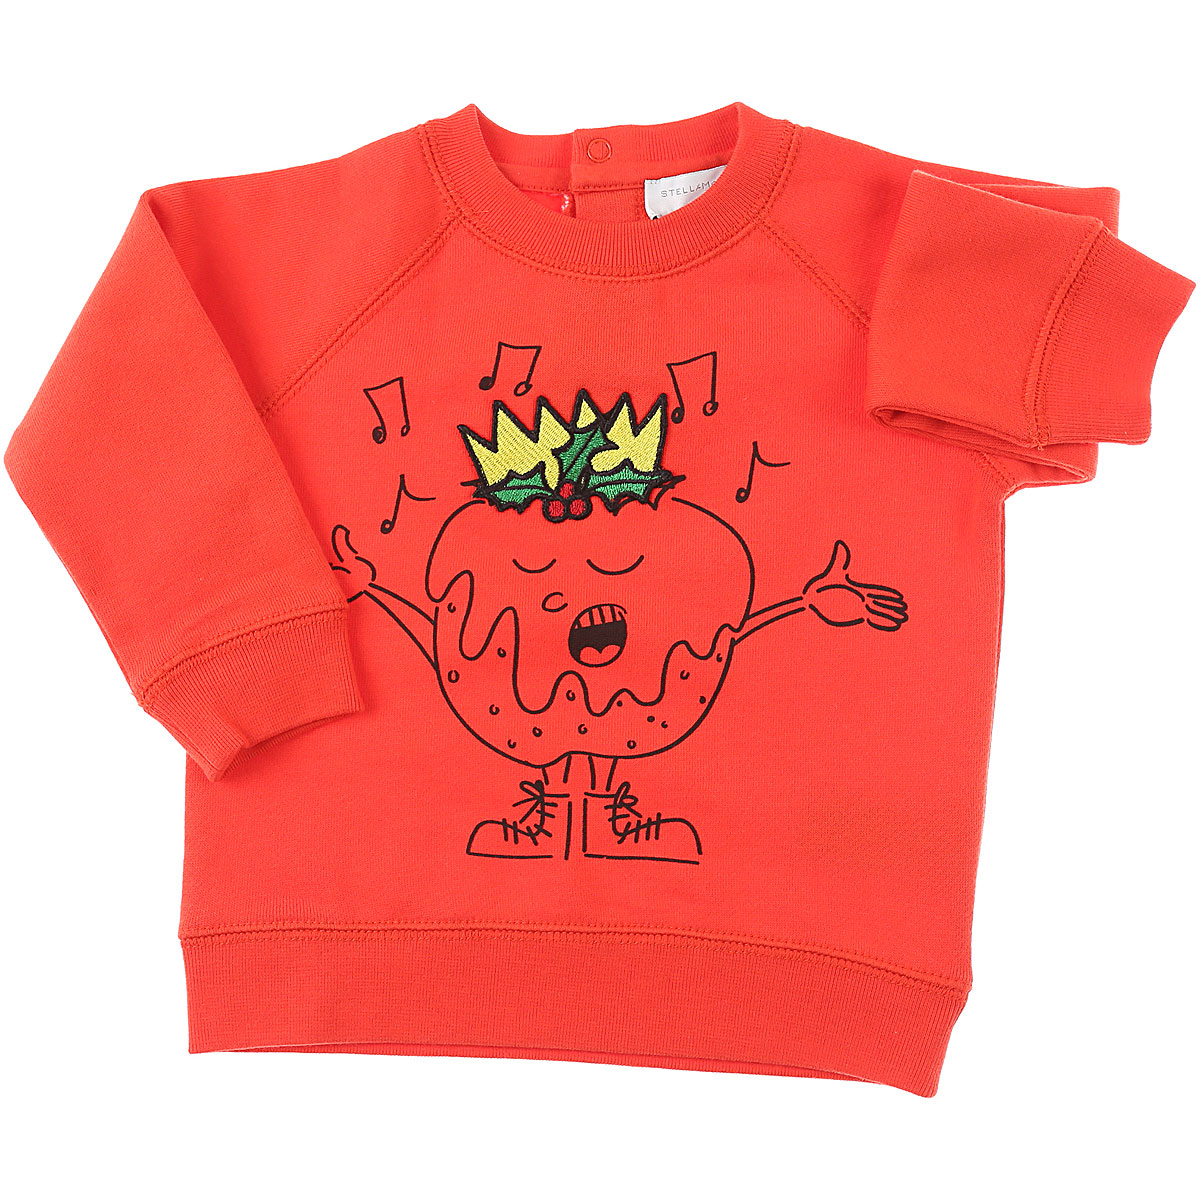 Stella McCartney Baby Sweatshirt & Kapuzenpullover für Jungen Günstig im Sale, Orangen Rot, Baumwolle, 2017, 12 M 18M 2Y 3Y